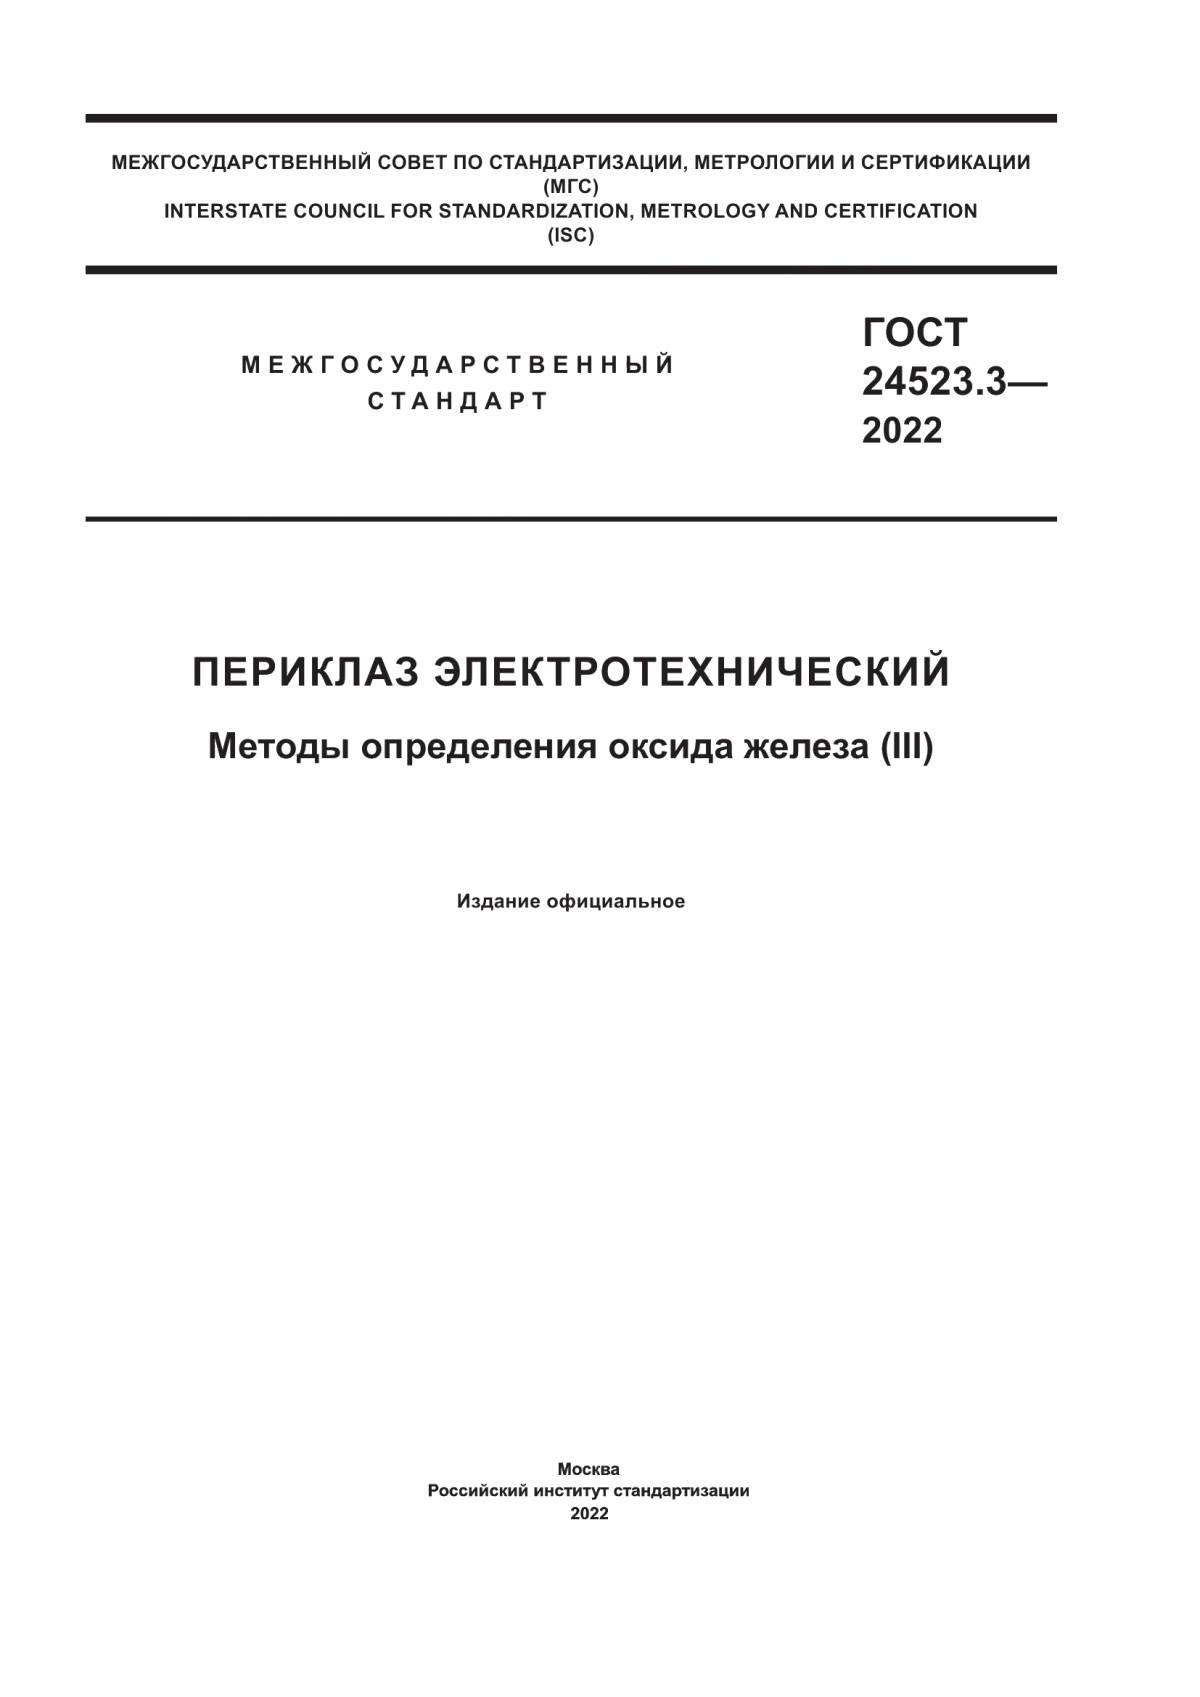 ГОСТ 24523.3-2022 Периклаз электротехнический. Методы определения оксида железа (III)